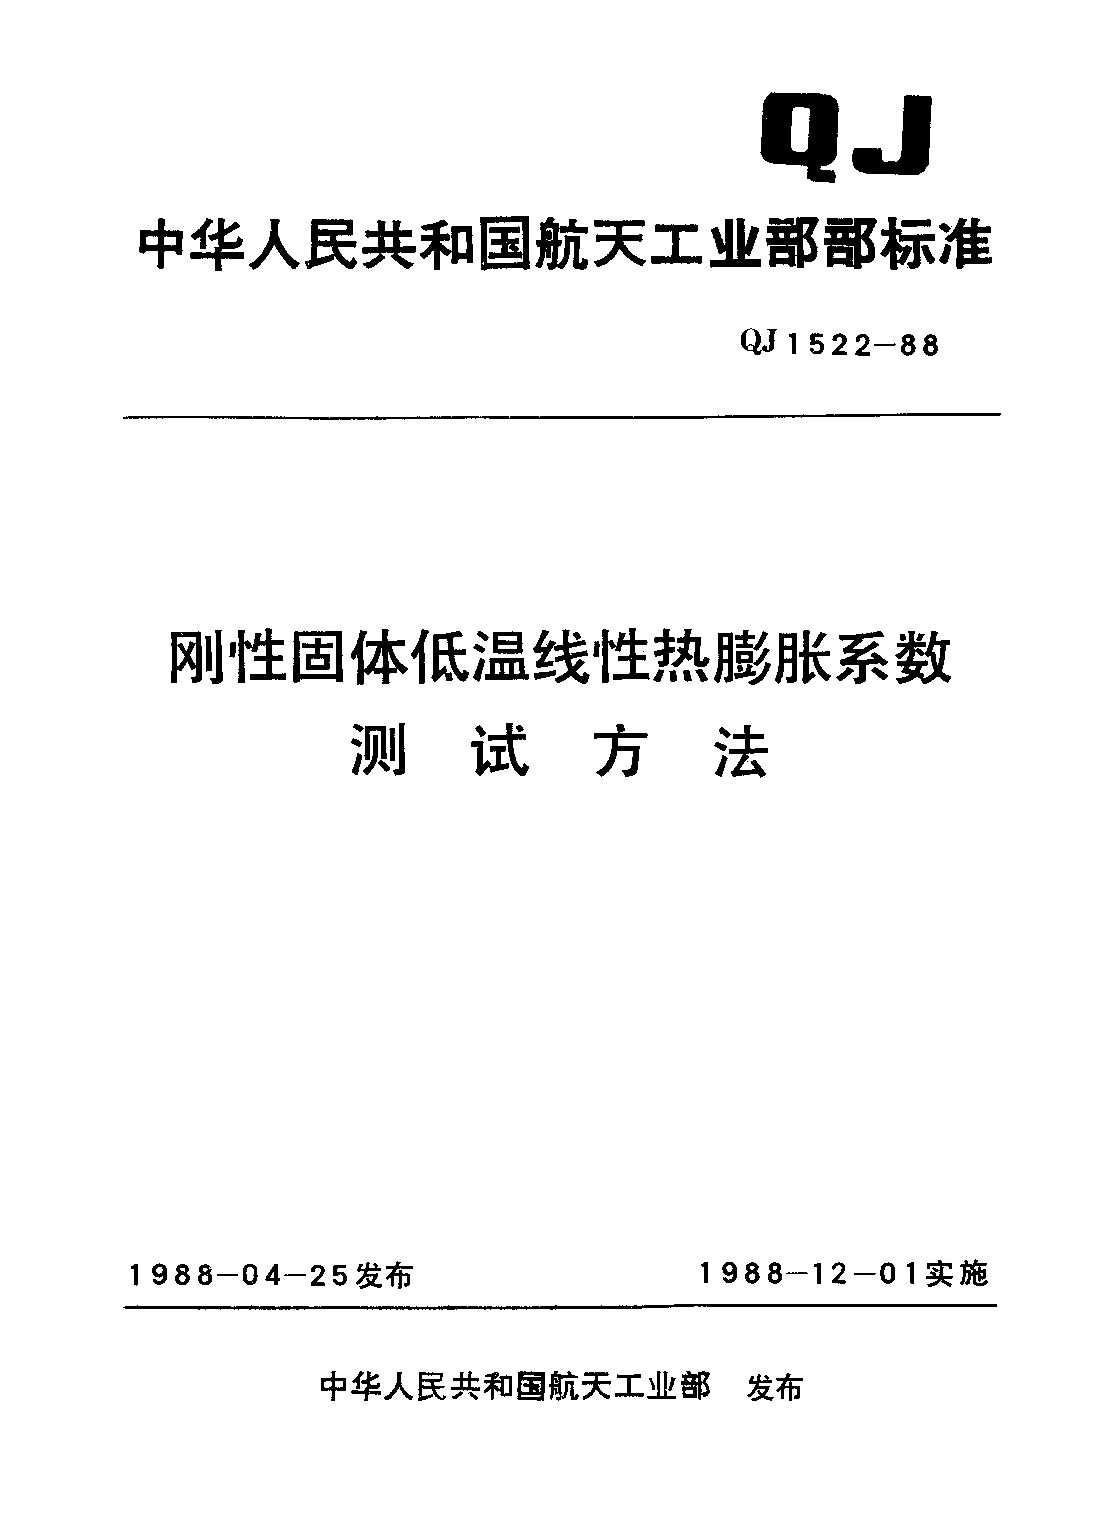 QJ 1522-1988封面图